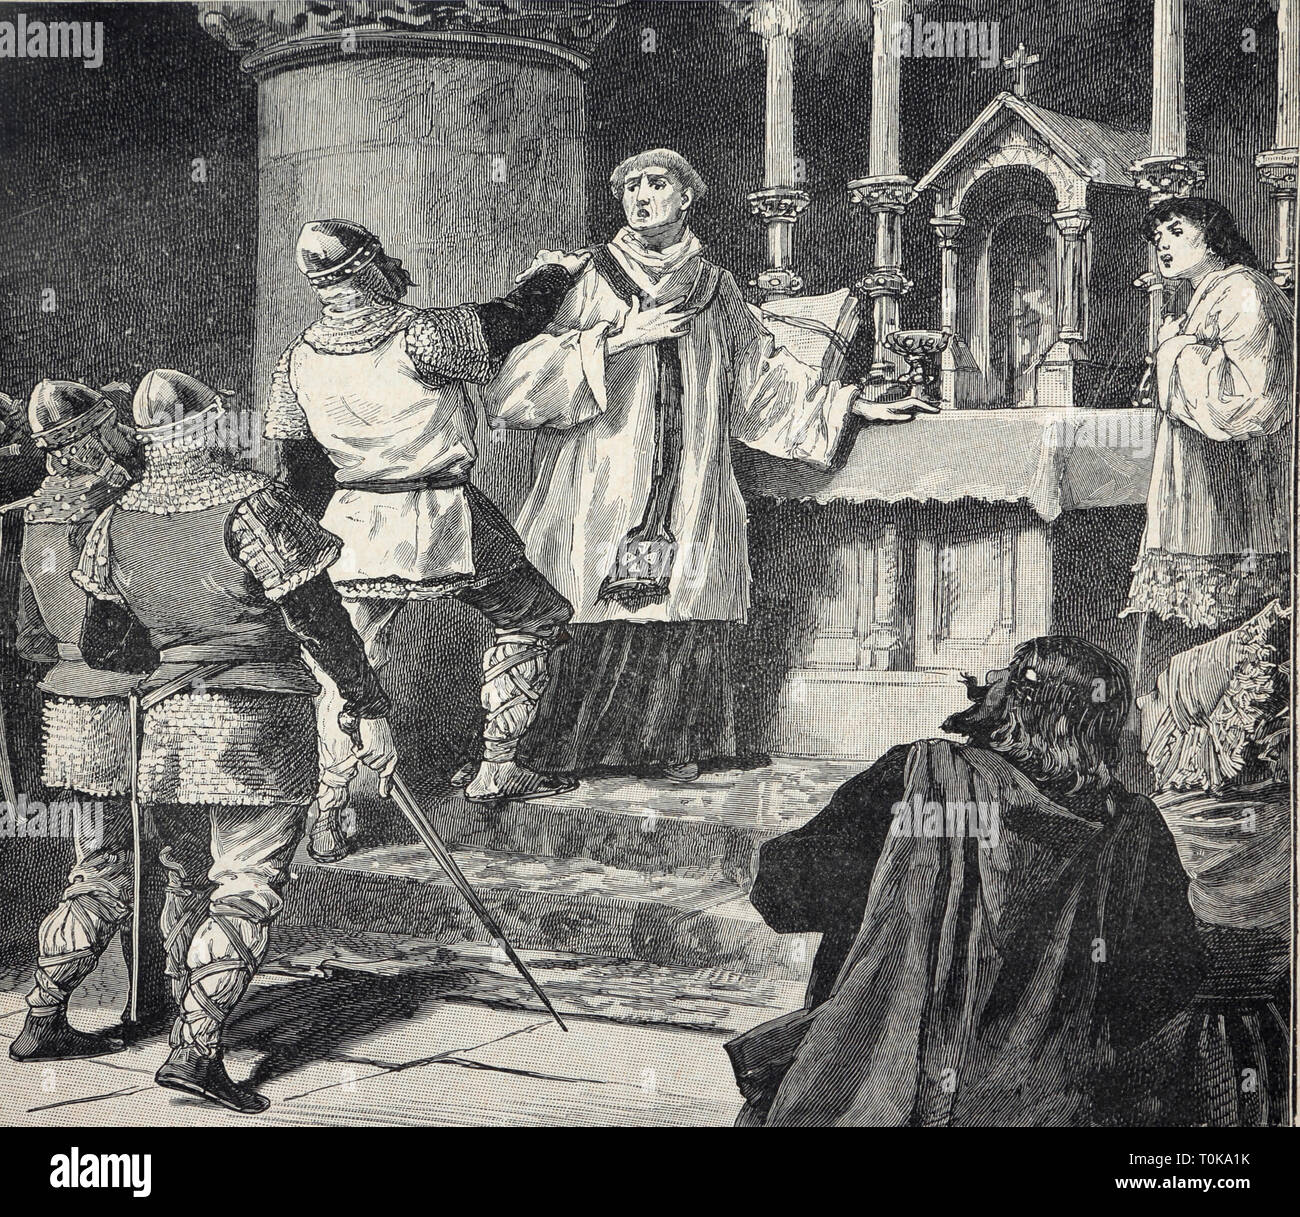 Illustrazione dell'arresto dell'Arcivescovo Geoffrey durante la Messa nel monastero di Dover nel 1191 A.D dal Libro Cassel della storia dell'Inghilterra - Archbisho Foto Stock